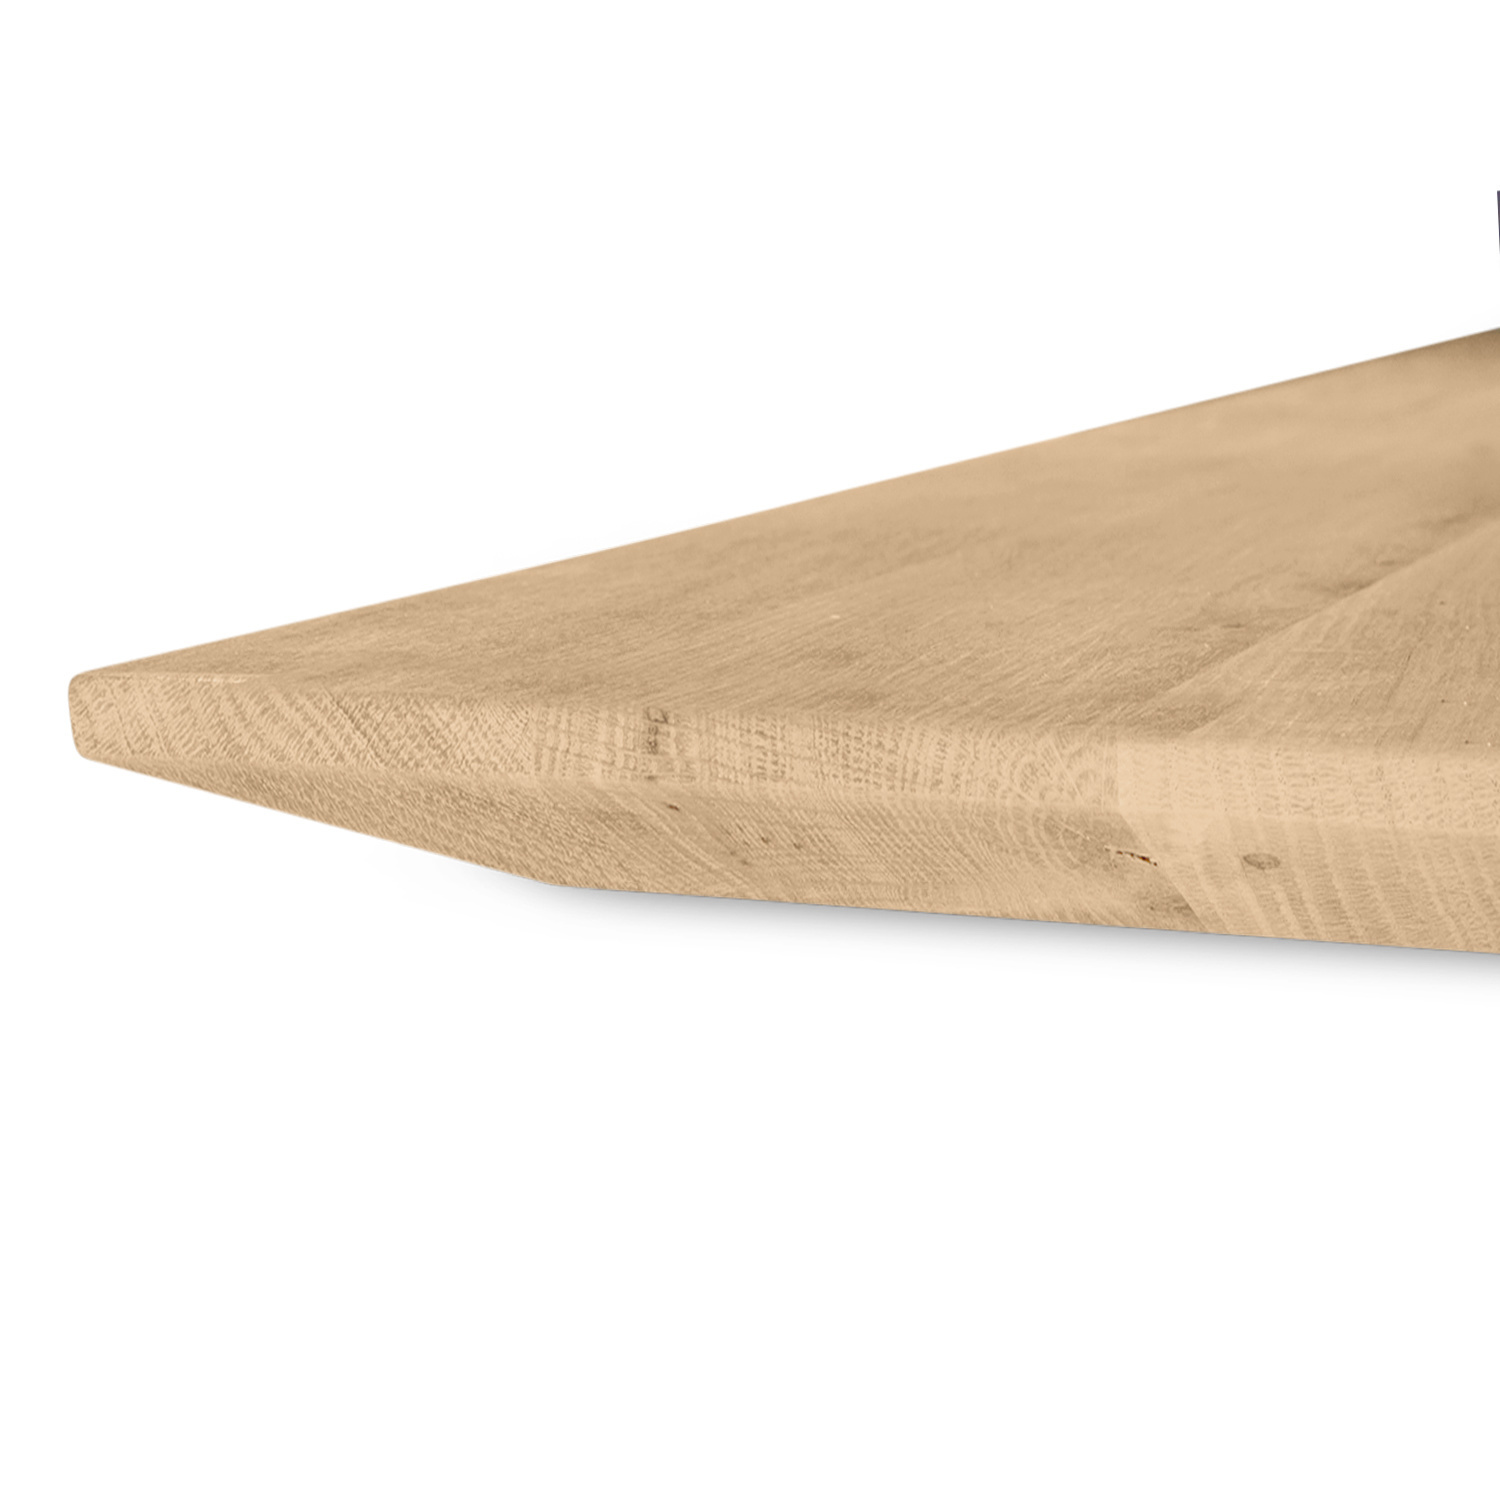  Tischplatte Eiche - Schweizer Kante - nach Maß - 4 cm dick (1-Schicht) - Breite Lamellen (10 - 12 cm breit) - Eichenholz A-Qualität - verleimt & künstlich getrocknet (HF 8-12%) - 50-120x50-248 cm